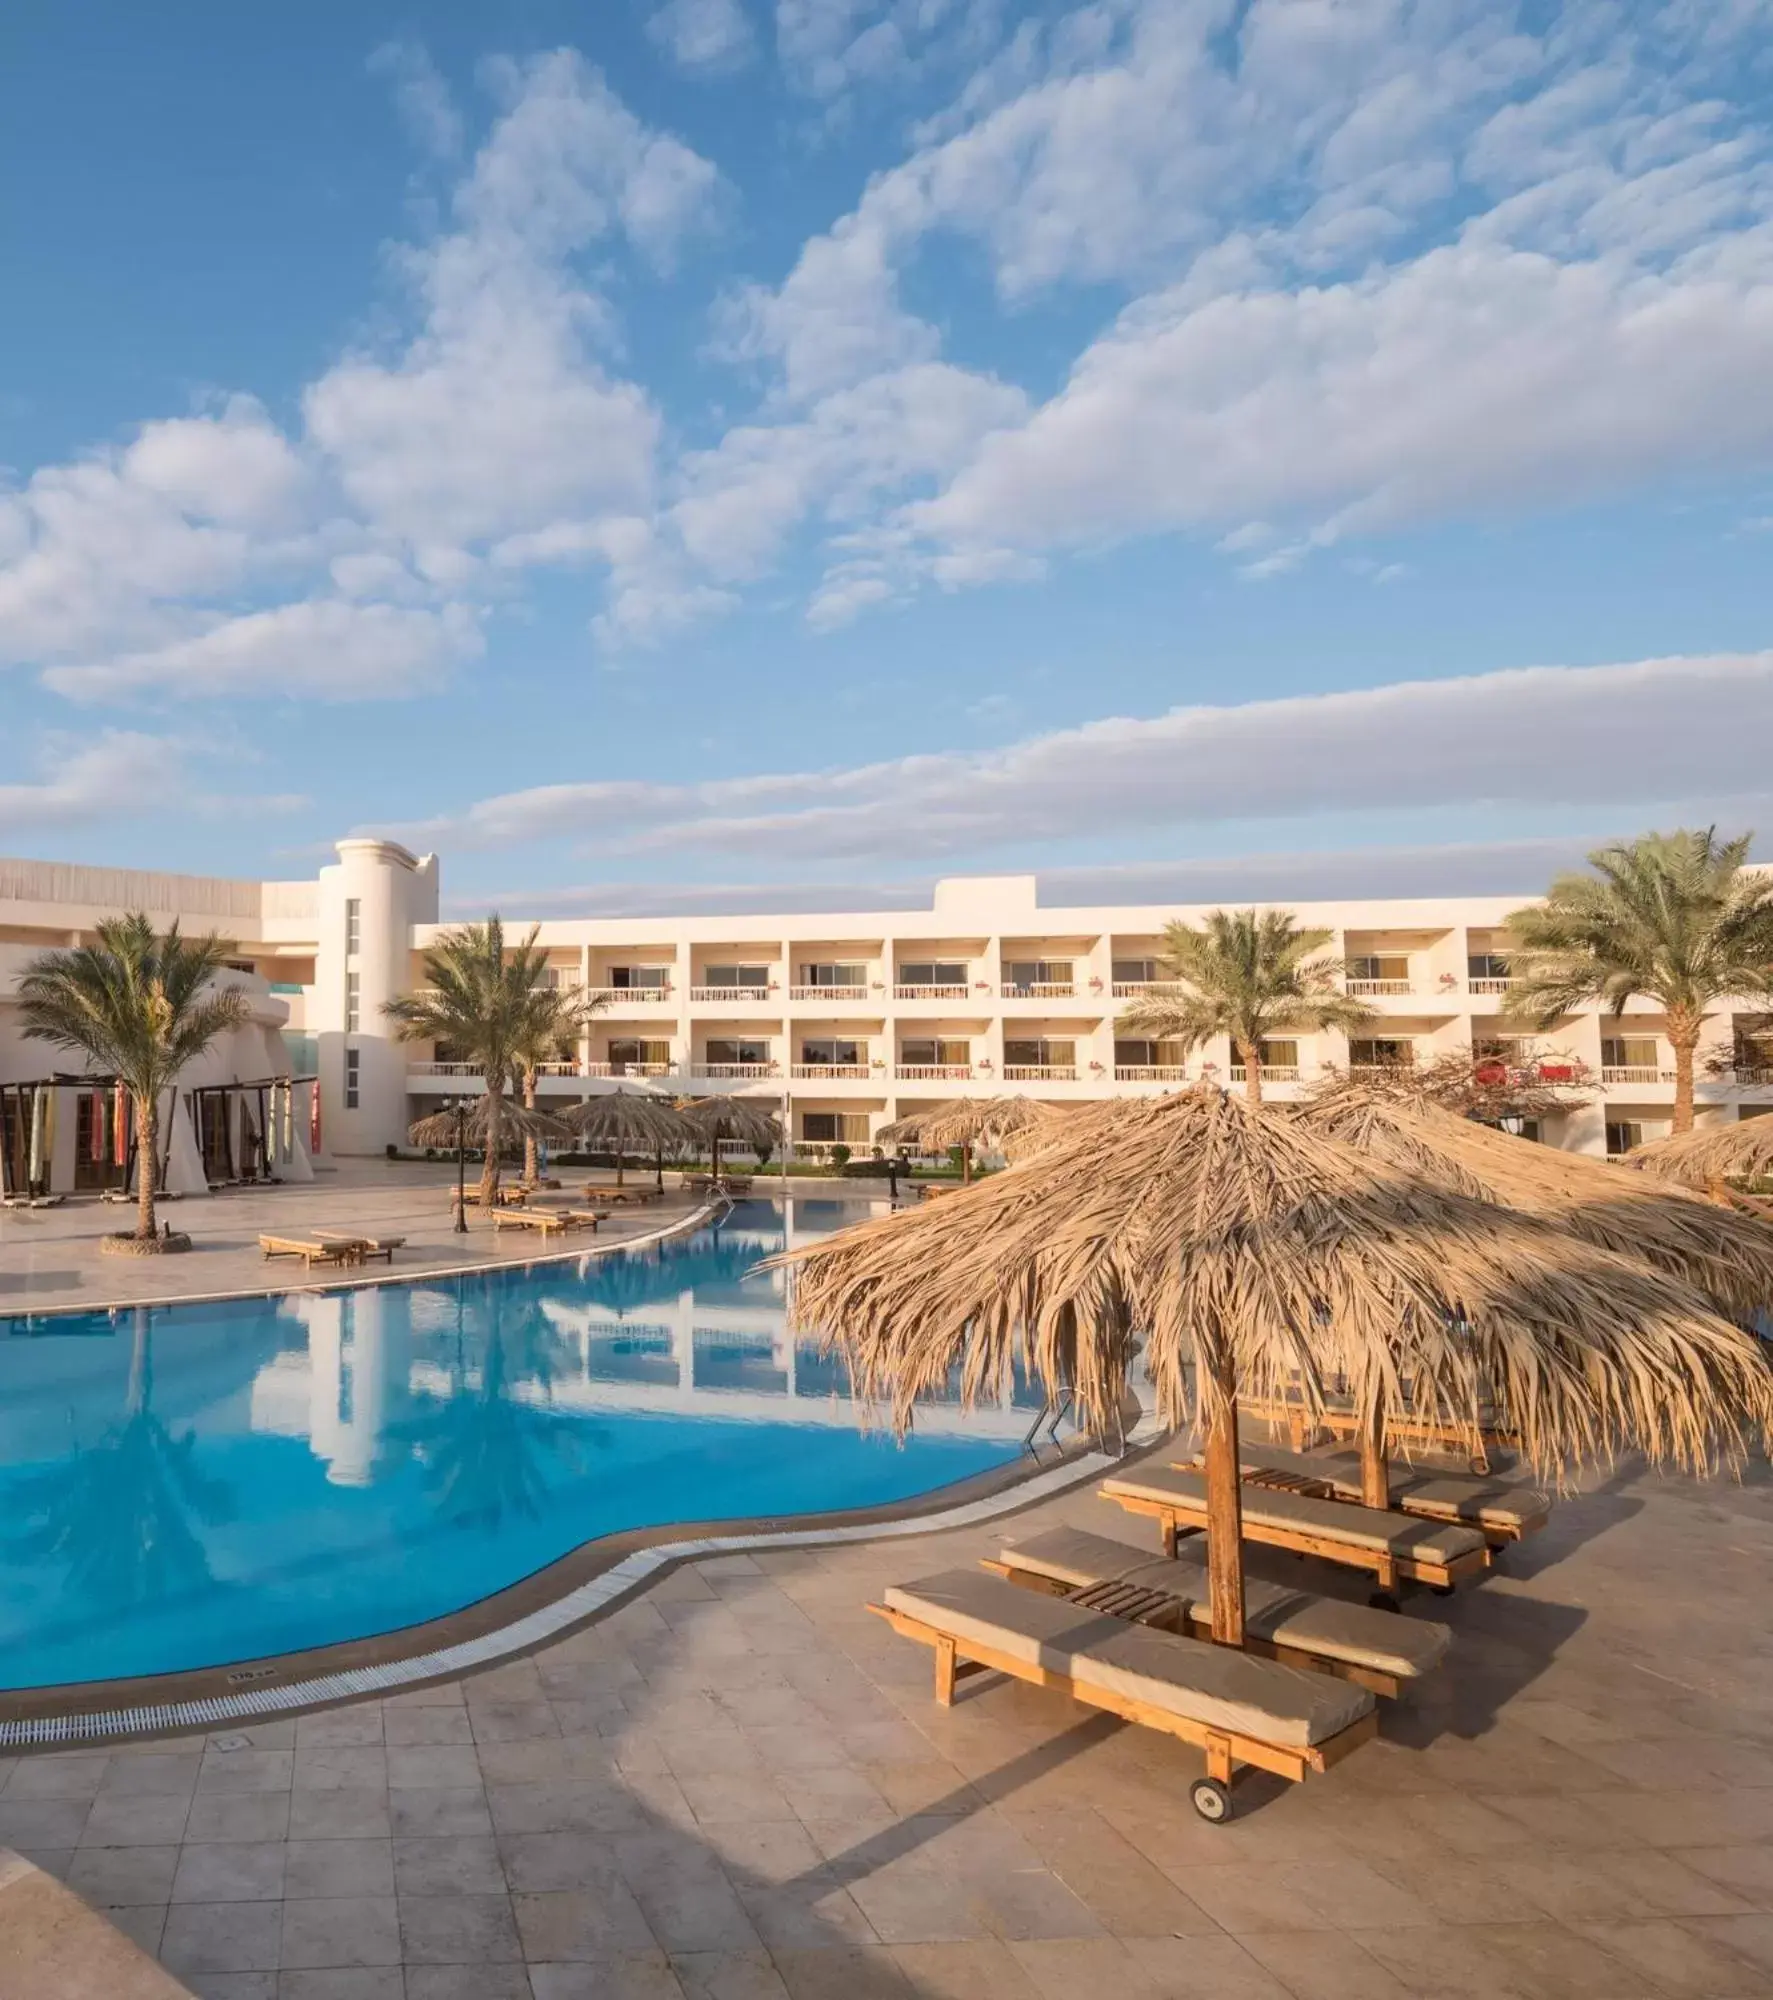 Swimming Pool in Hurghada Long Beach Resort